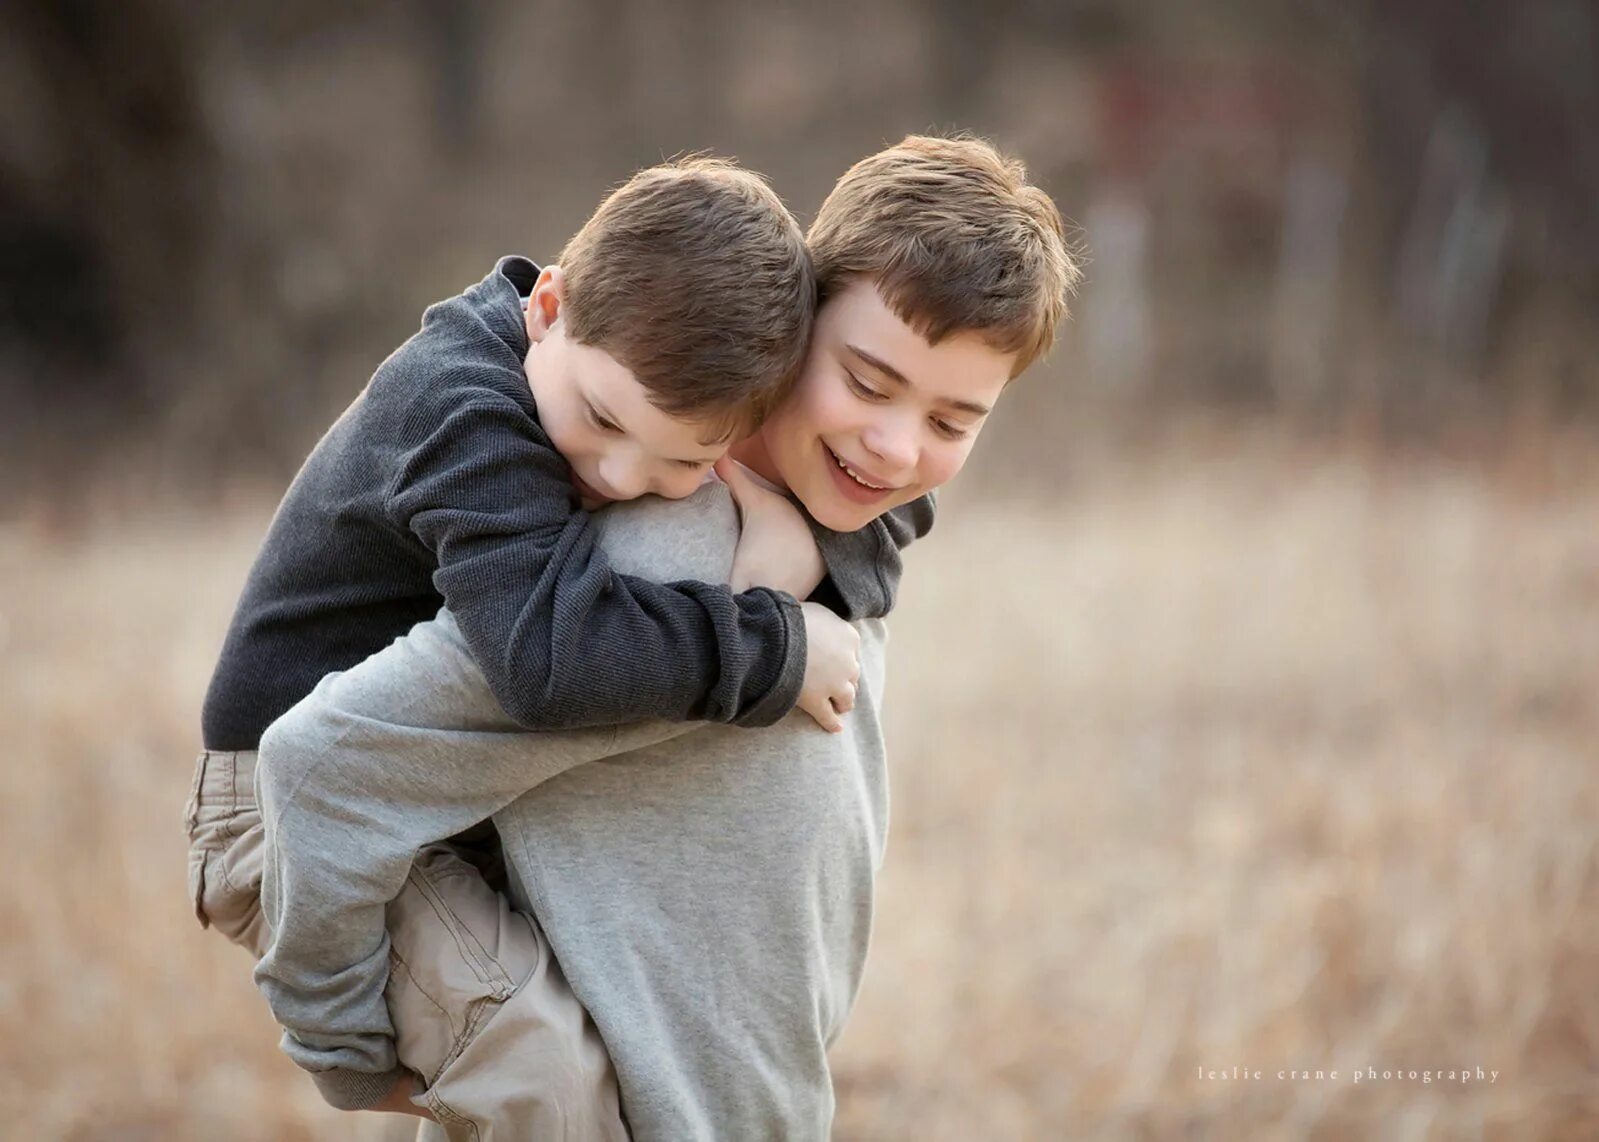 Младший сильнее старшего. Мальчики обнимаются. Два пальчика обнимаются. Два мальчика. Два мальчика обнимаются.